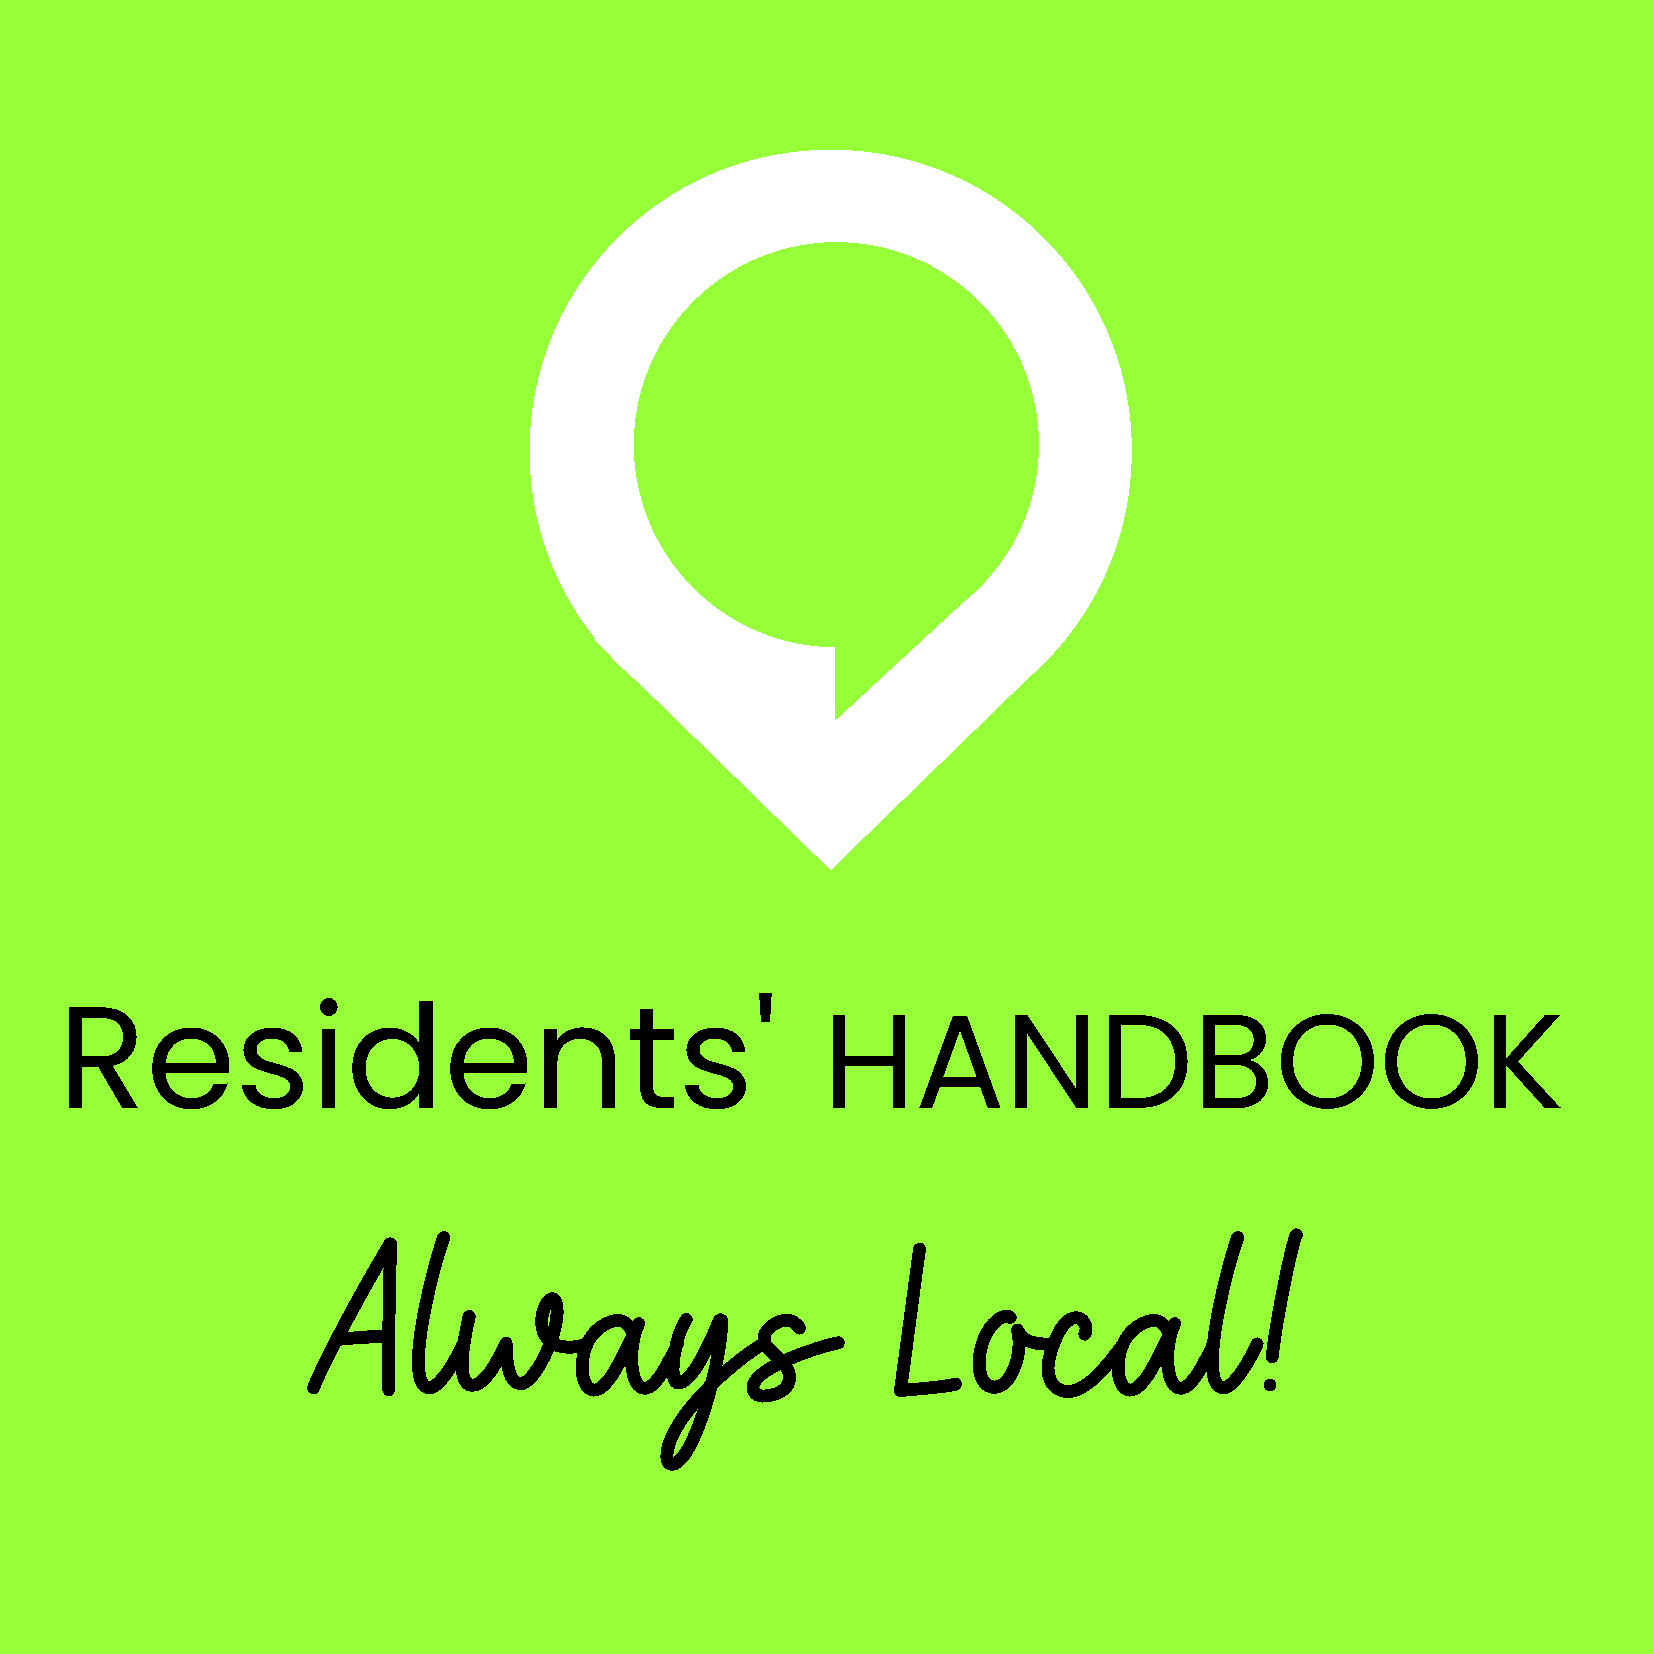 Residents Handbook logo